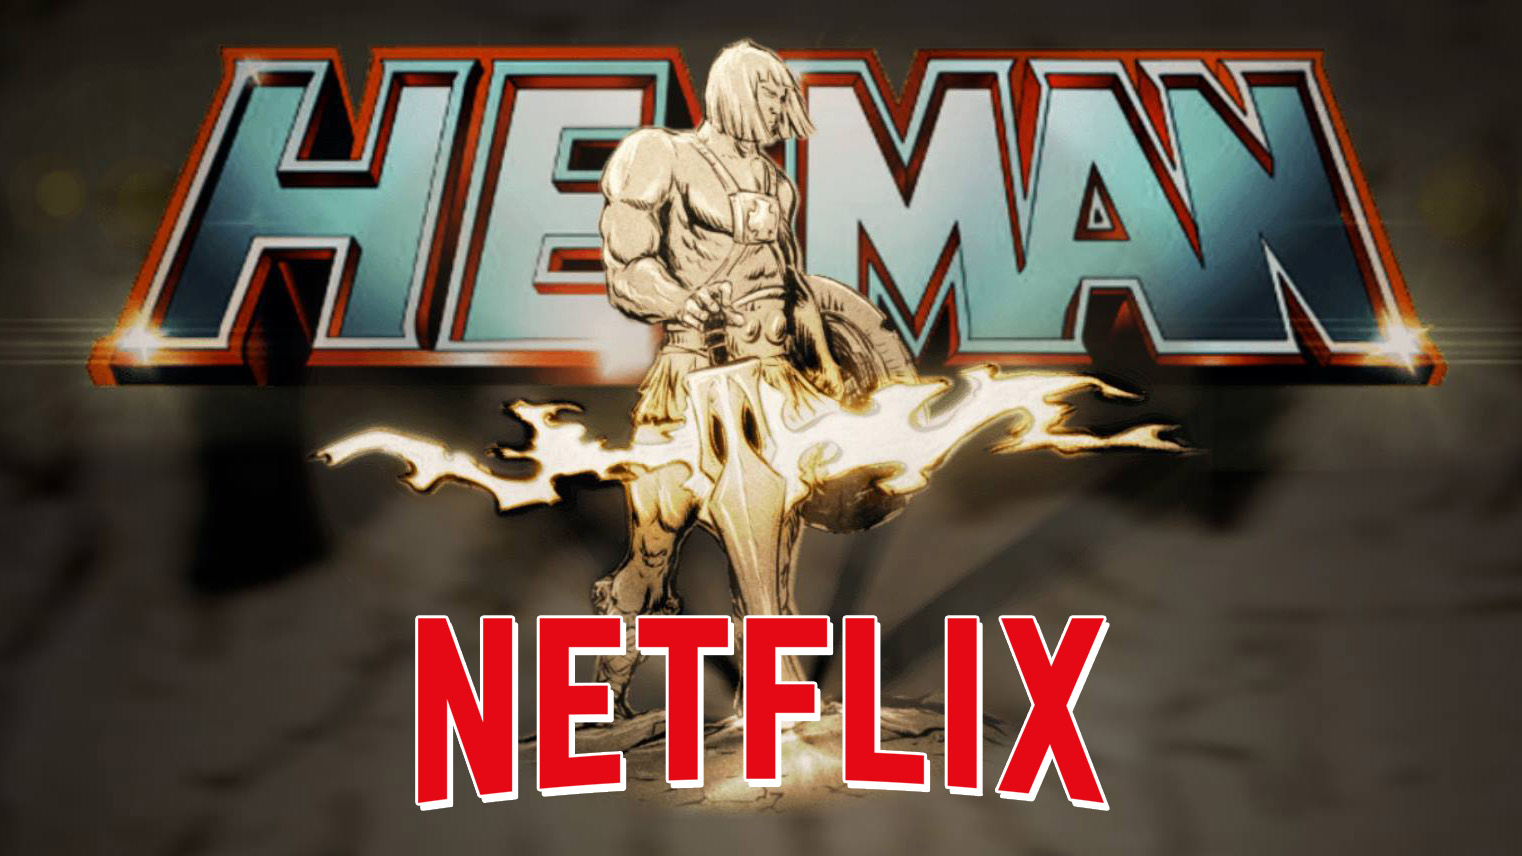 He-Man Netflix